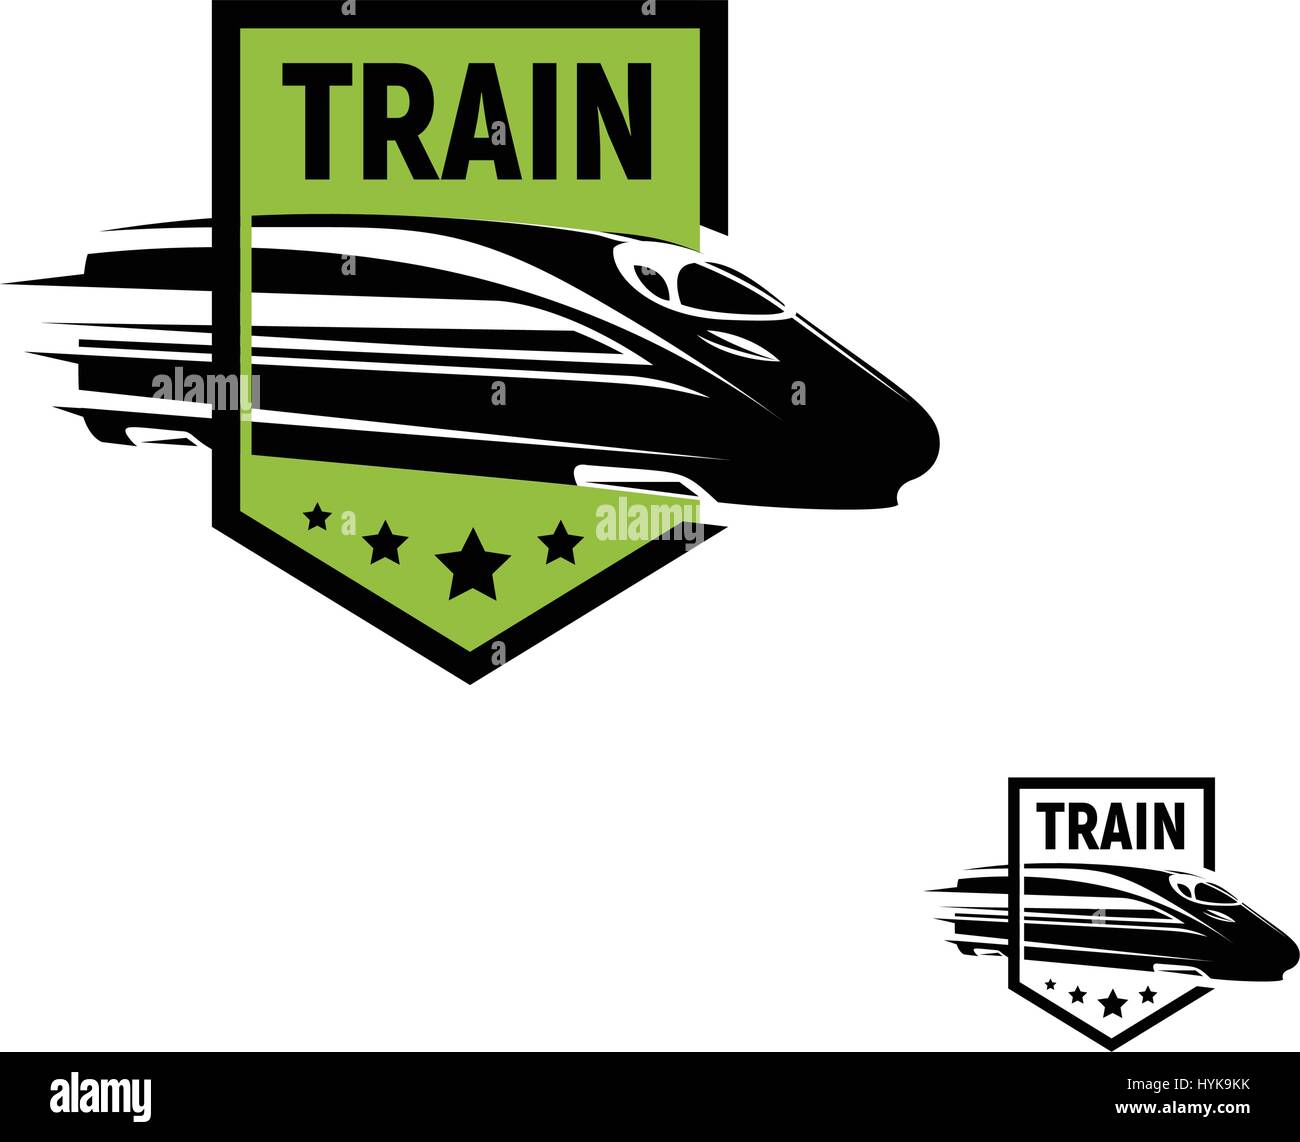 Isolierte abstrakt schwarz Zug im grünen Rahmen Logo auf weißem Hintergrund, monochrome moderne Eisenbahn Transport Schriftzug, Eisenbahn Element in Gravur Stil-Vektor-illustration Stock Vektor